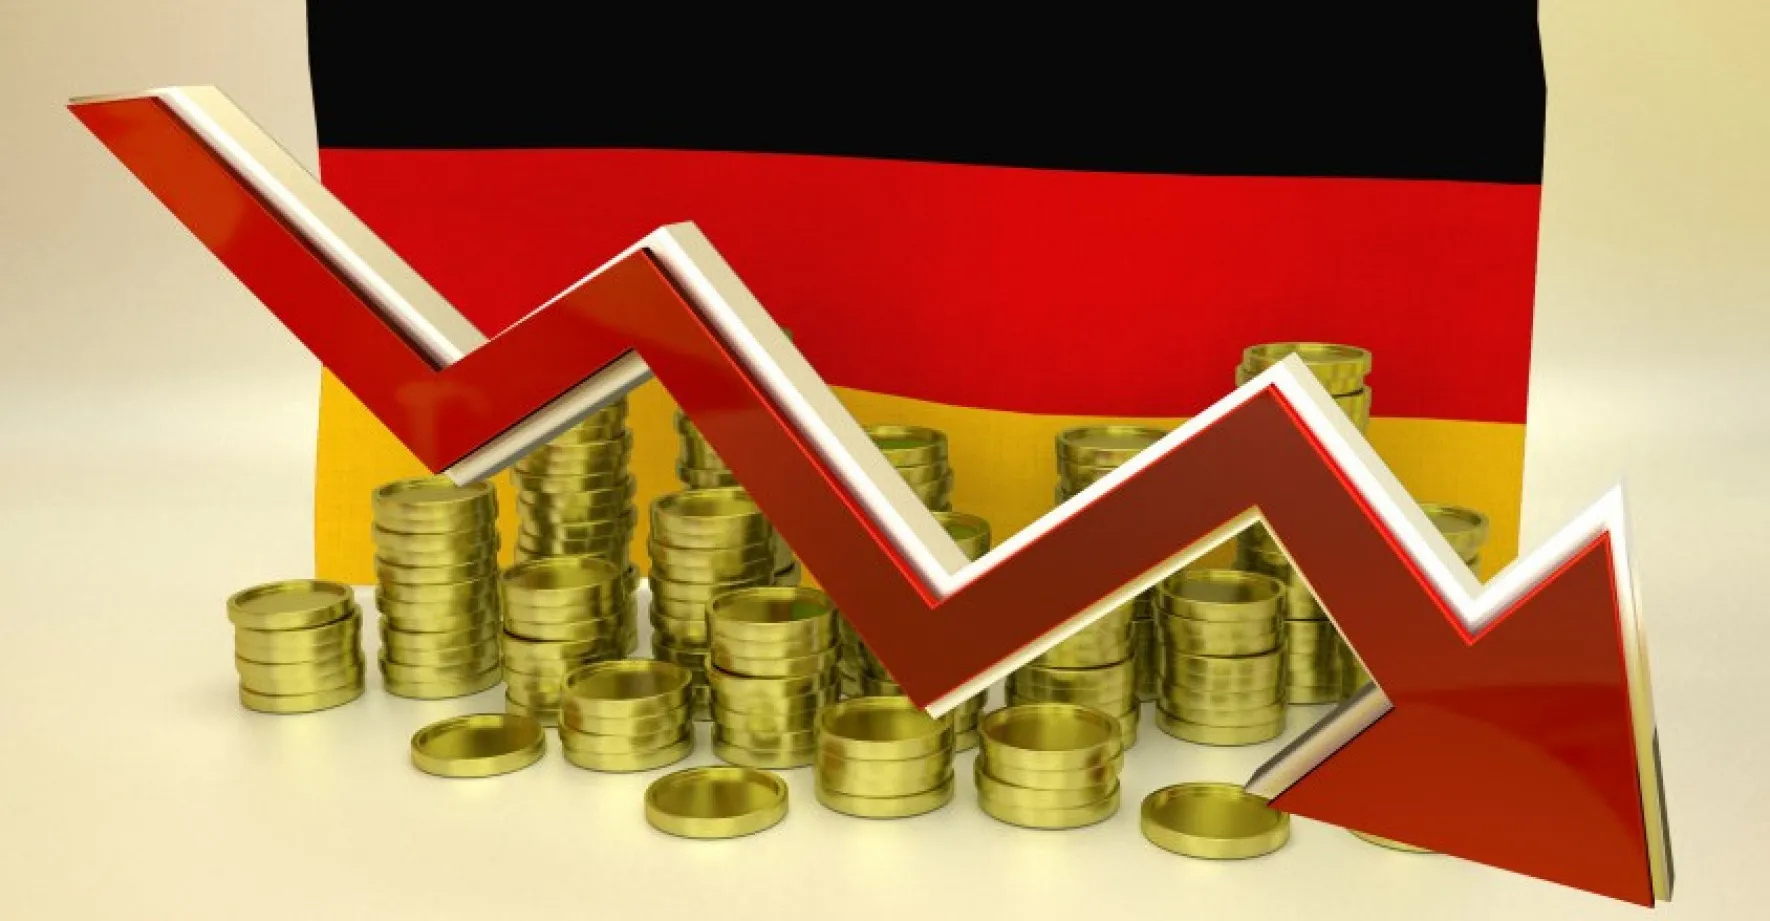 Špatná zpráva i pro Česko. Německá ekonomika se propadla do recese